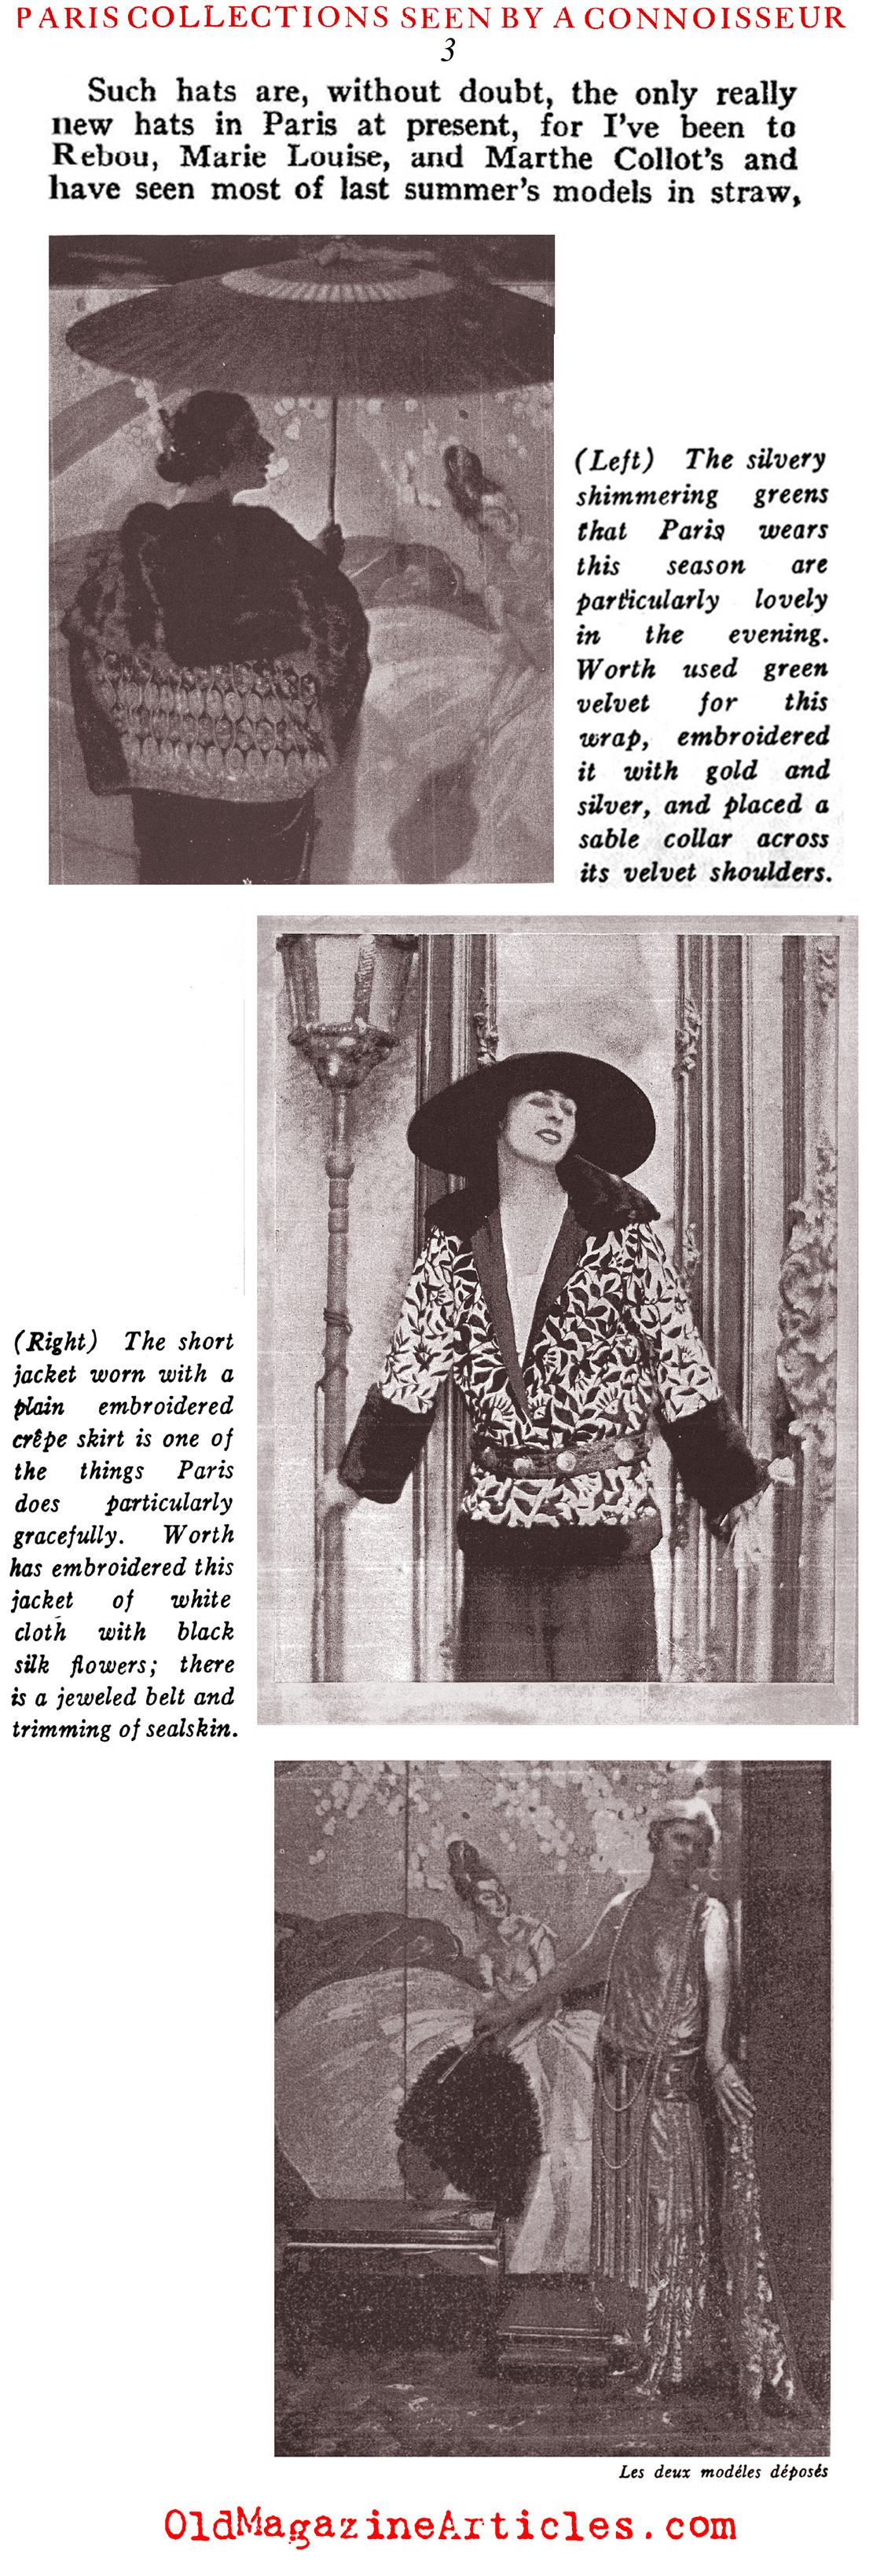 Baron Adolf de Meyer and the Paris Collections of 1922 (Harper's Bazaar, 1922)